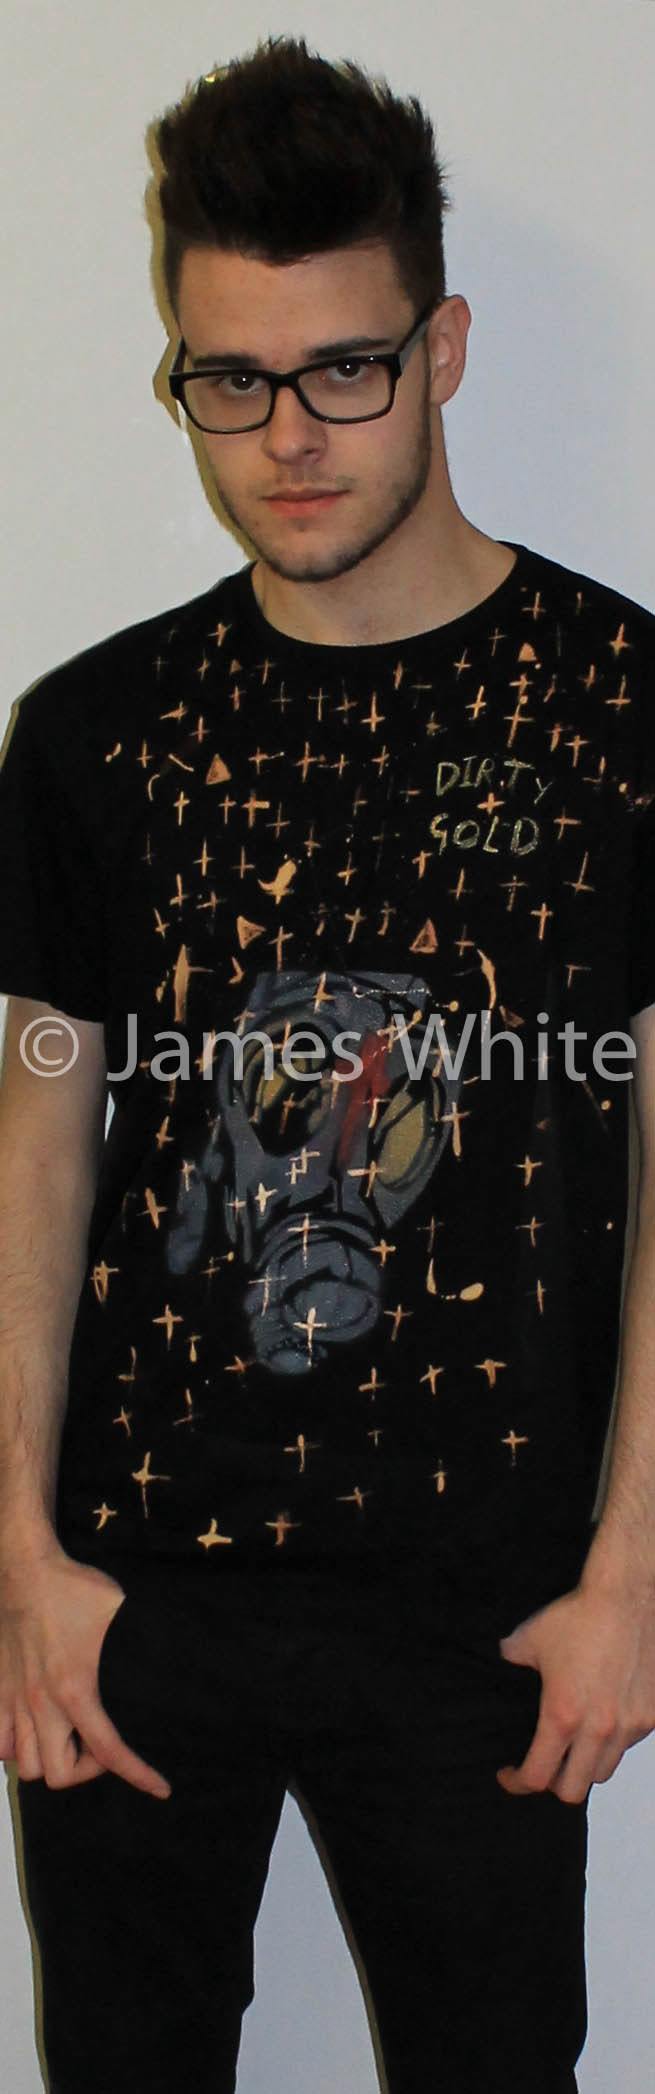 angle haze artist rap Album musician surface design Printing dirty gold t-shirt fine concert Street art